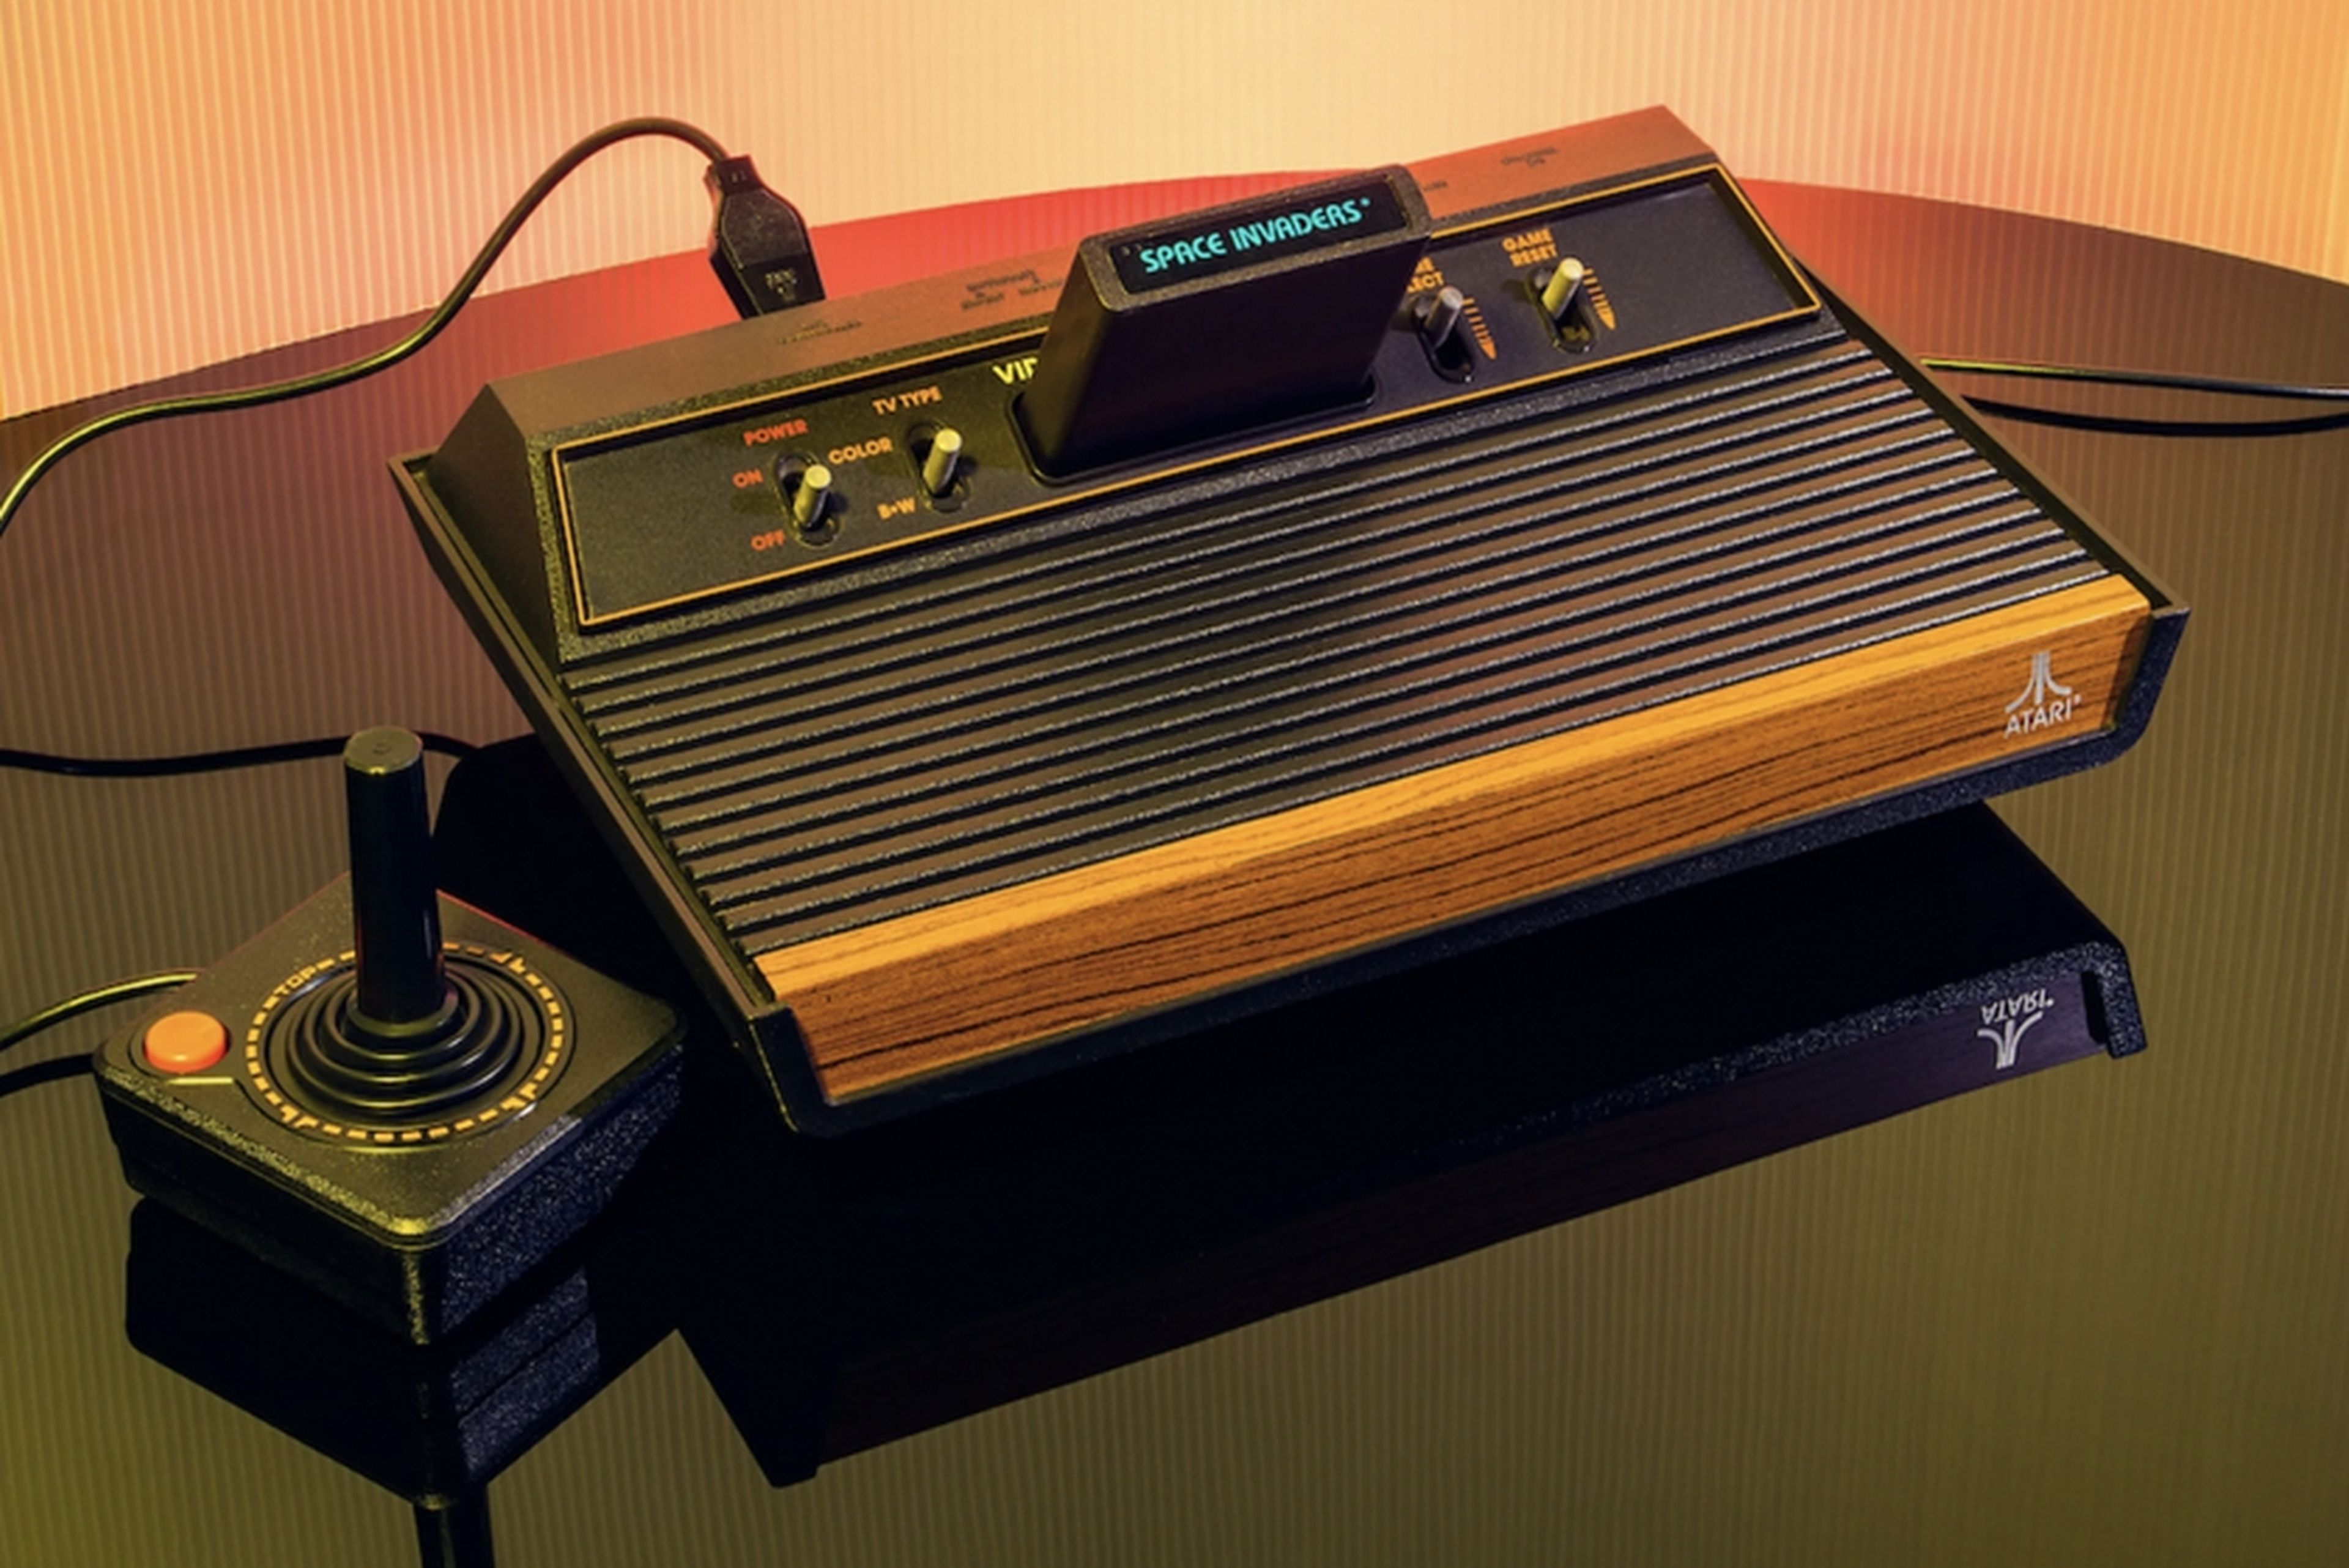 Atari pone a la venta cartuchos de juegos de Atari 2600, una consola de 1977